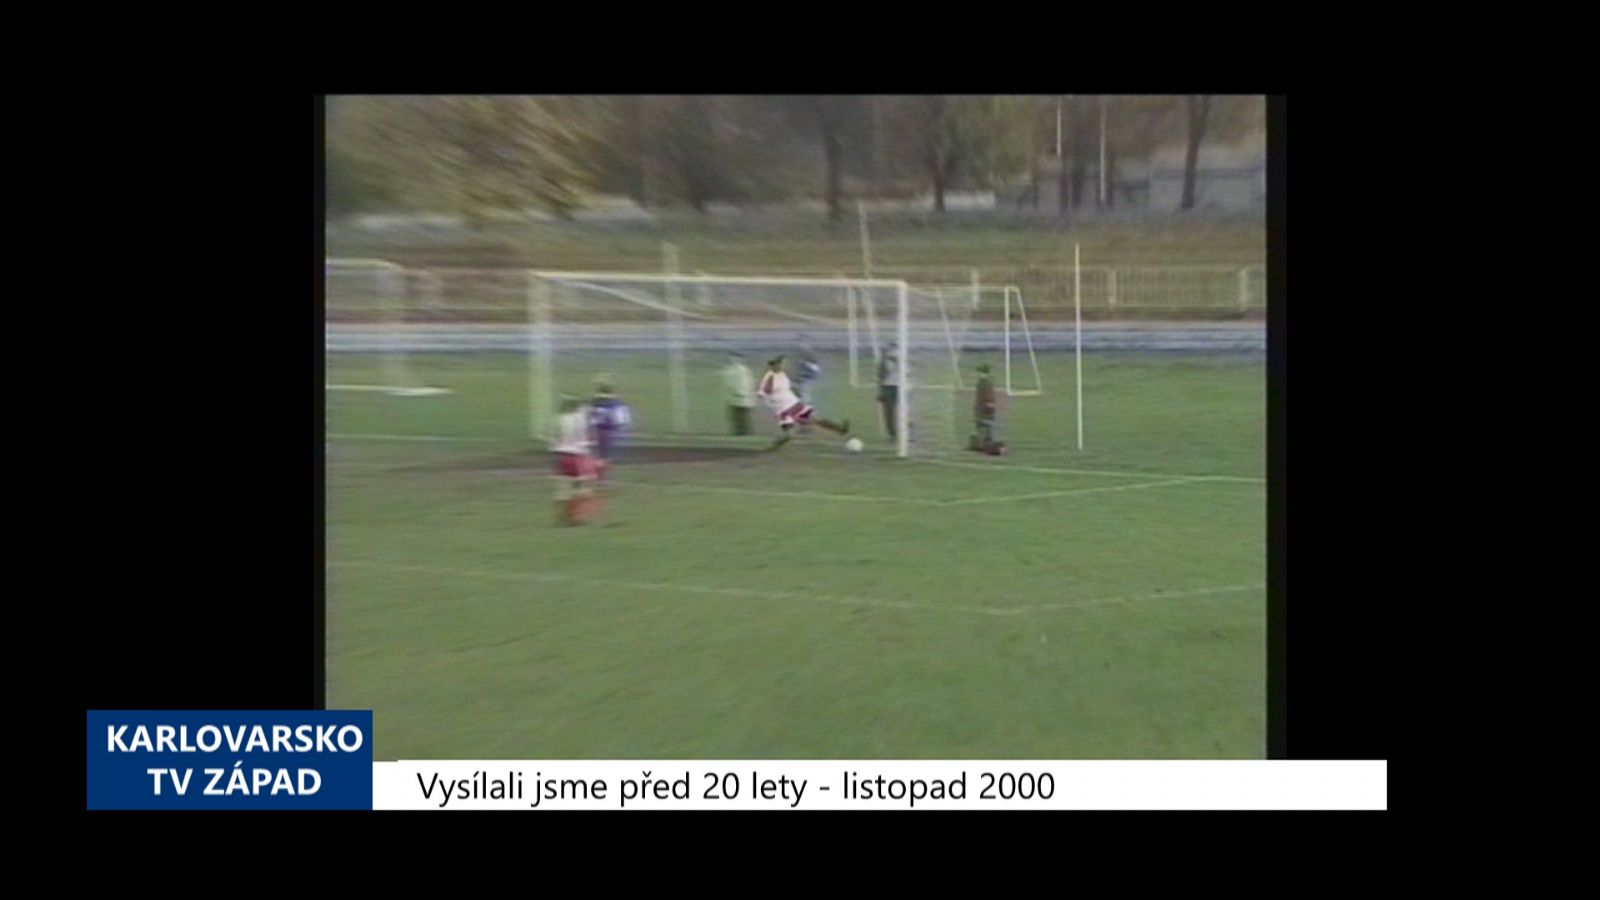 2000 – Cheb: Sparťanky porazily Chebanky 8:0 (TV Západ)	  